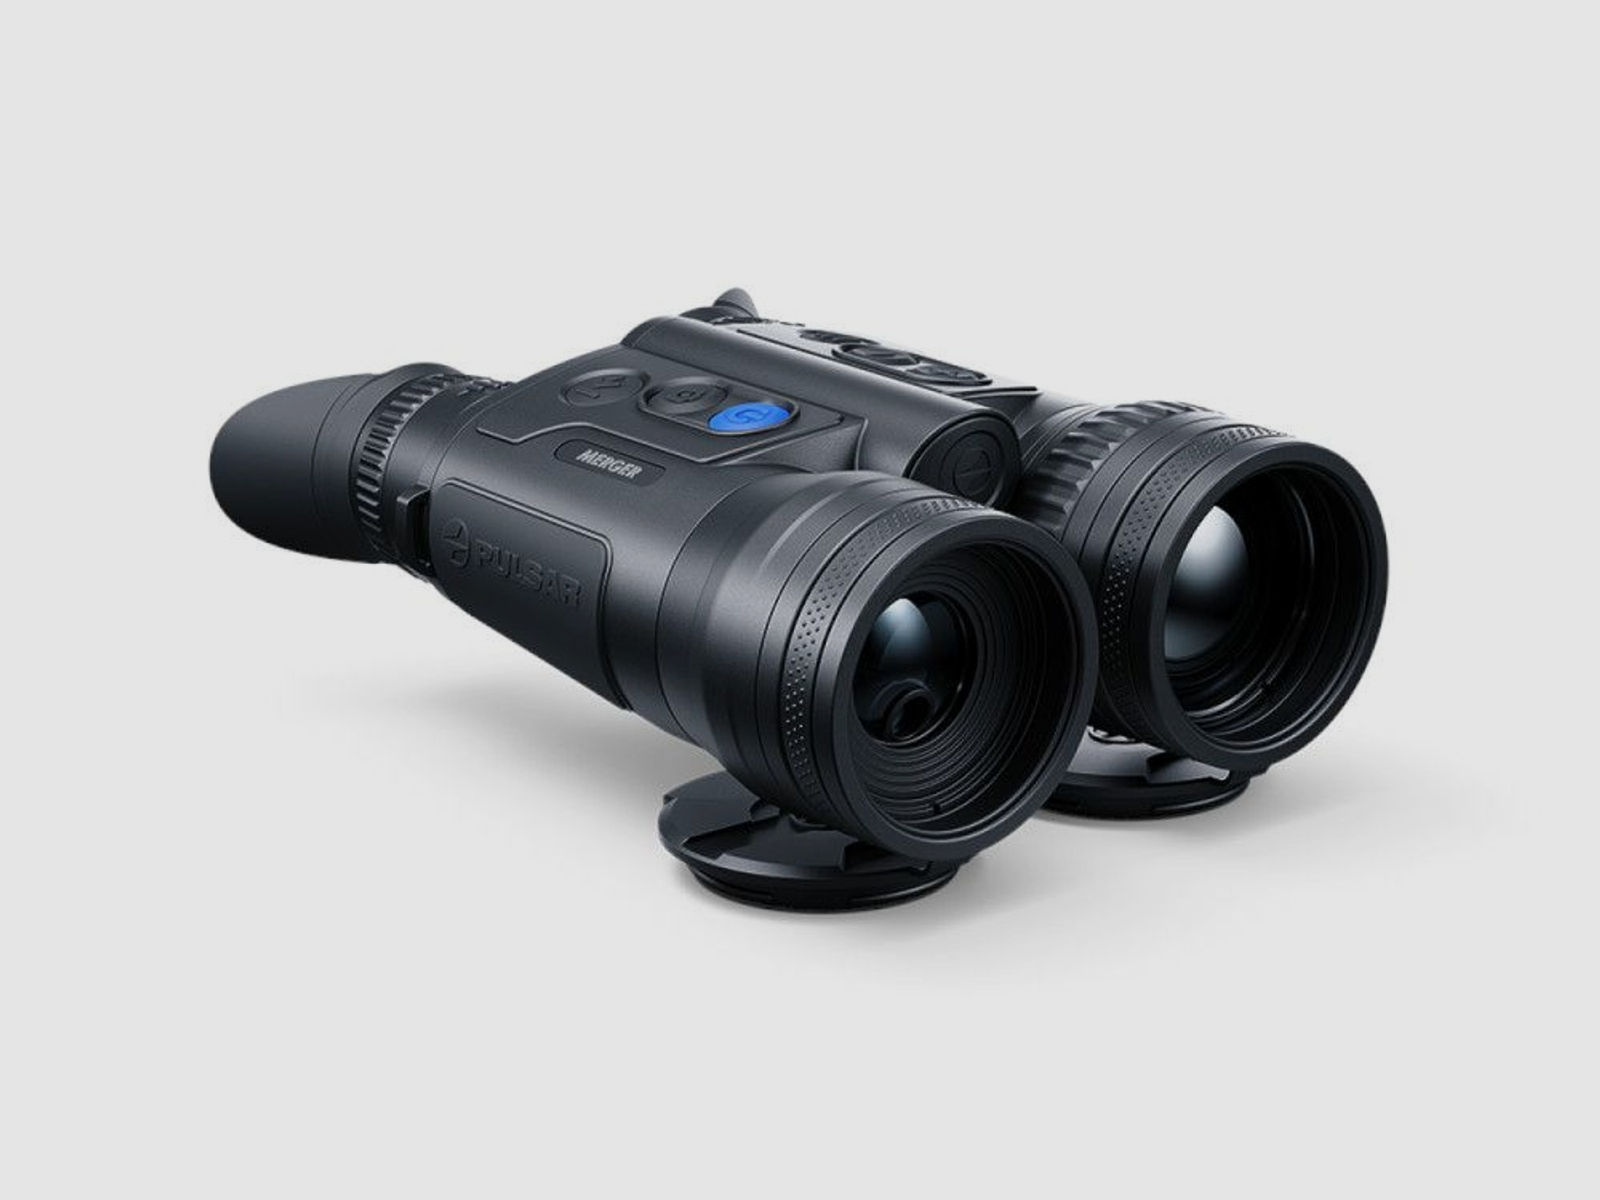 Pulsar Merger LRF XL50 Wärmebildkamera